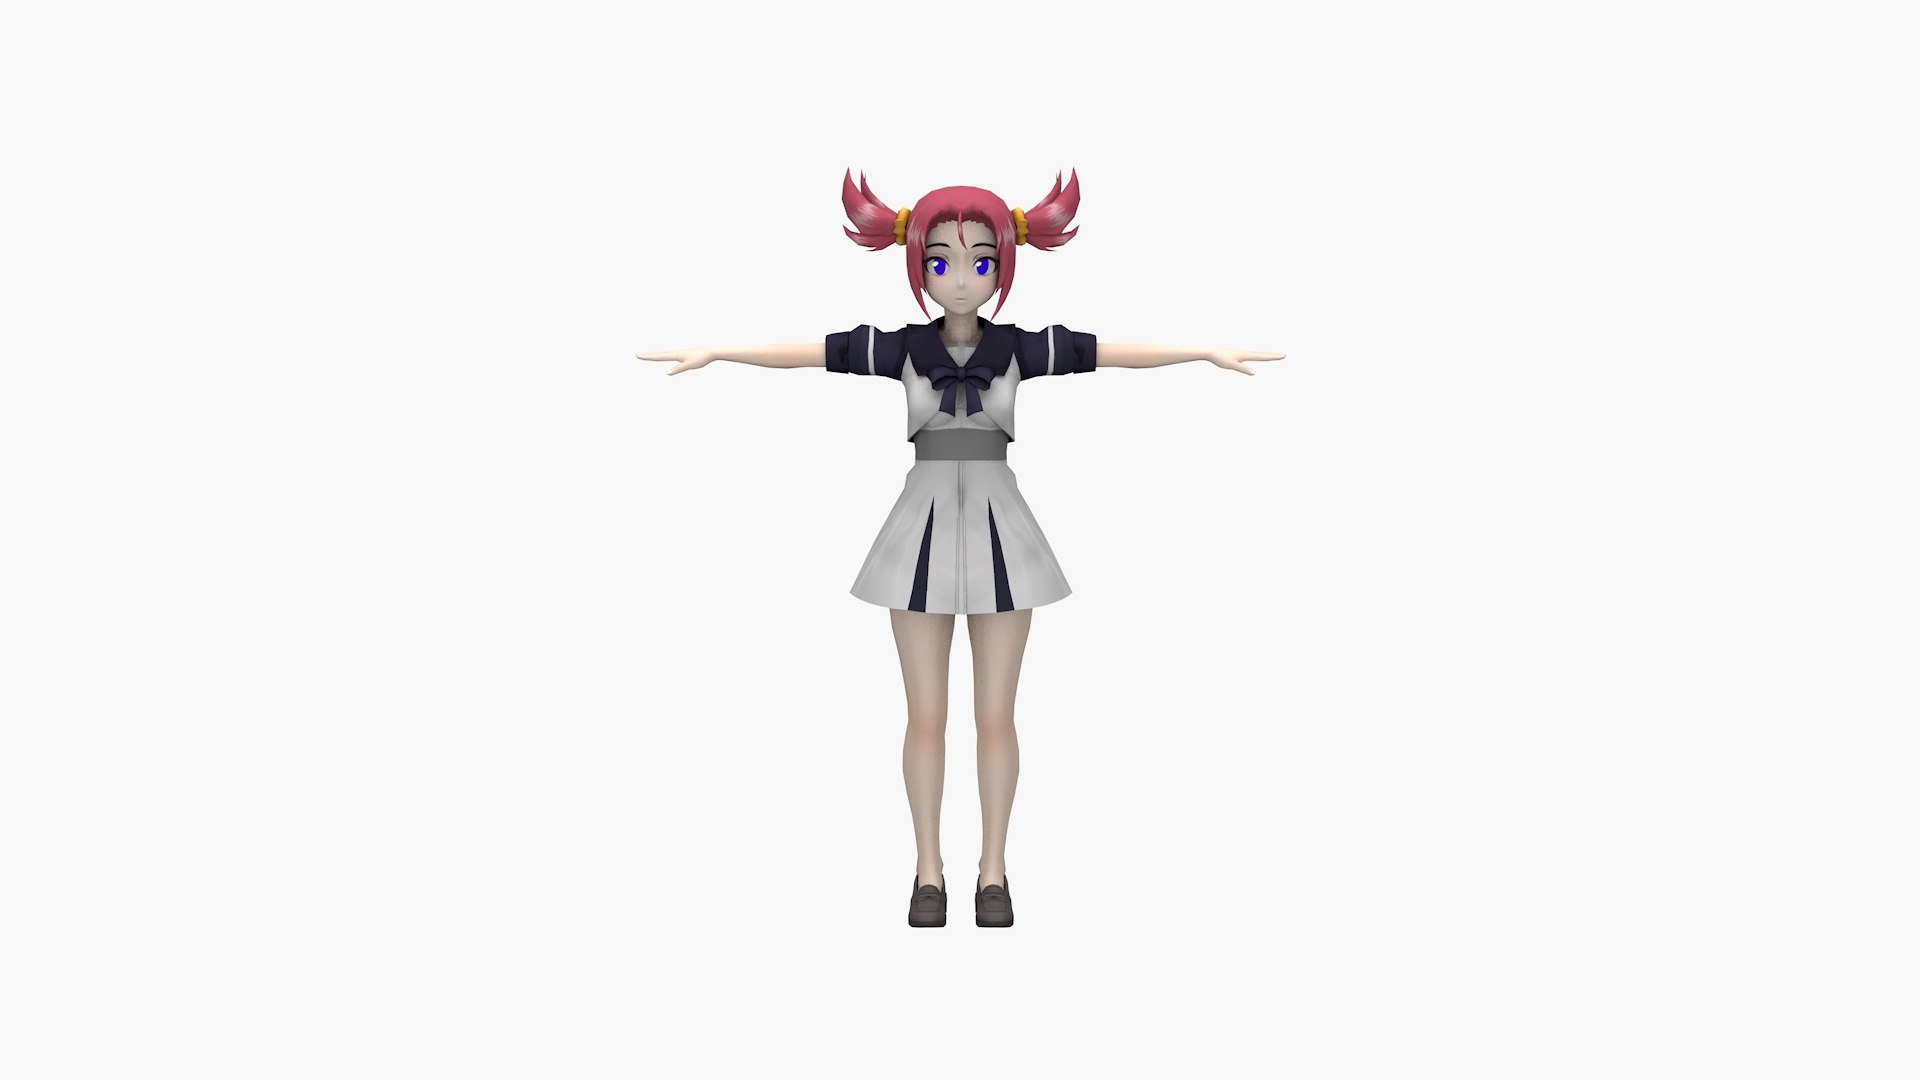 Mlp Human Anime Porn Schoolgirl - 3D Anime Schoolgirl V3 - TurboSquid 1851714